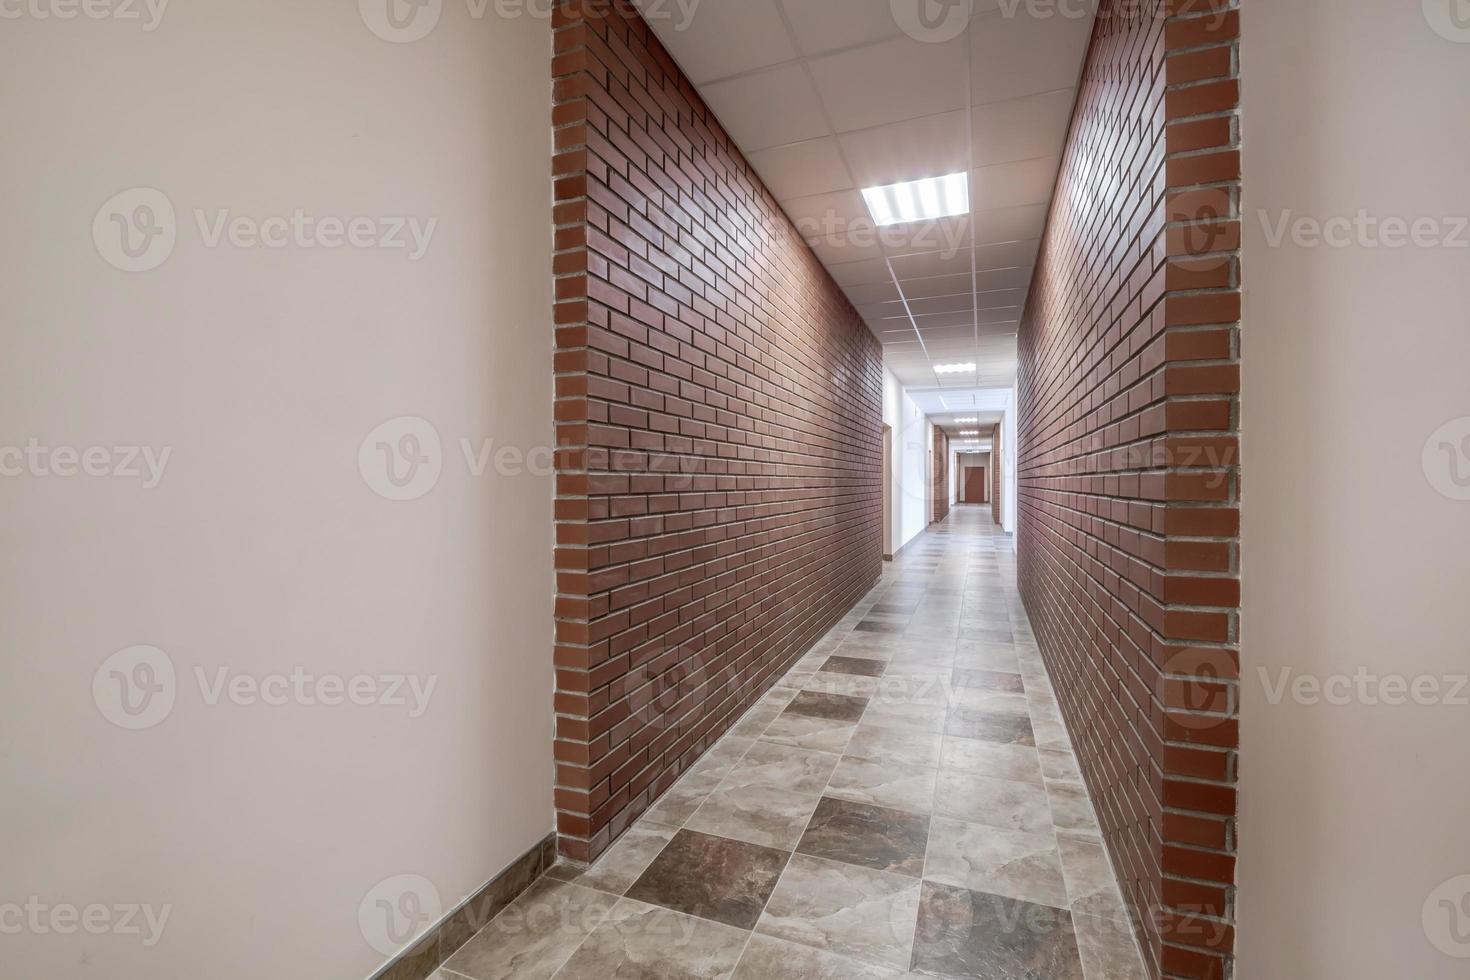 blanc vide longue couloir avec rouge brique des murs et des portes dans intérieur de moderne appartements ou Bureau photo